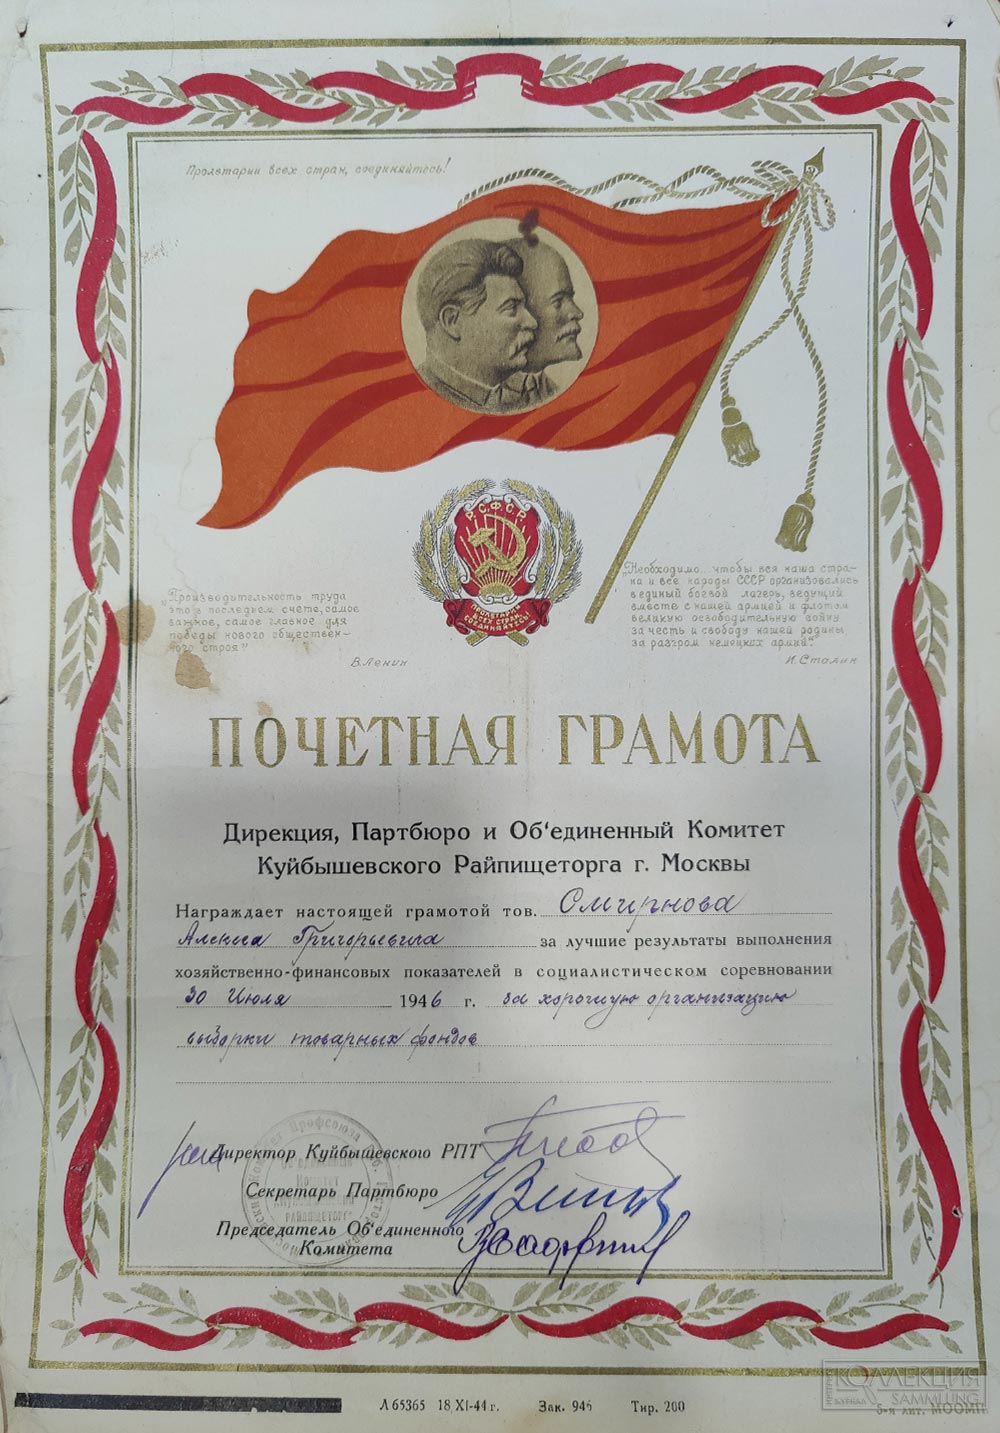 Почётная грамота Дирекция, Партбюро и Объединённый Комитет Куйбышевского Райпищеторга г. Москвы. 1947